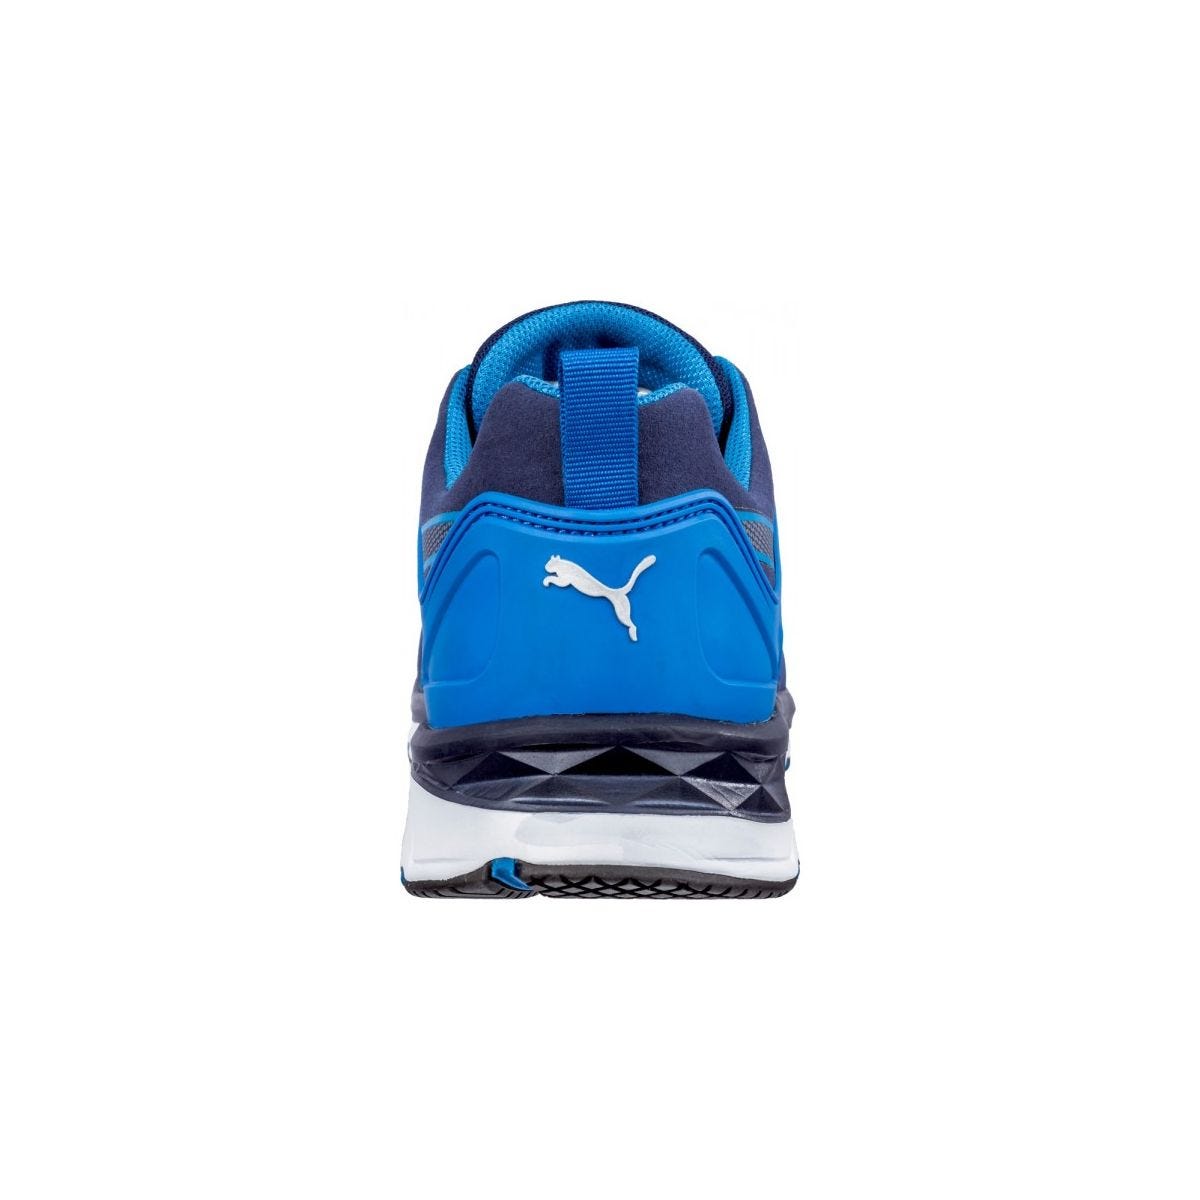 Chaussures de sécurité Velocity 2.0 Bleu Low S1P - Puma - Taille 37 1